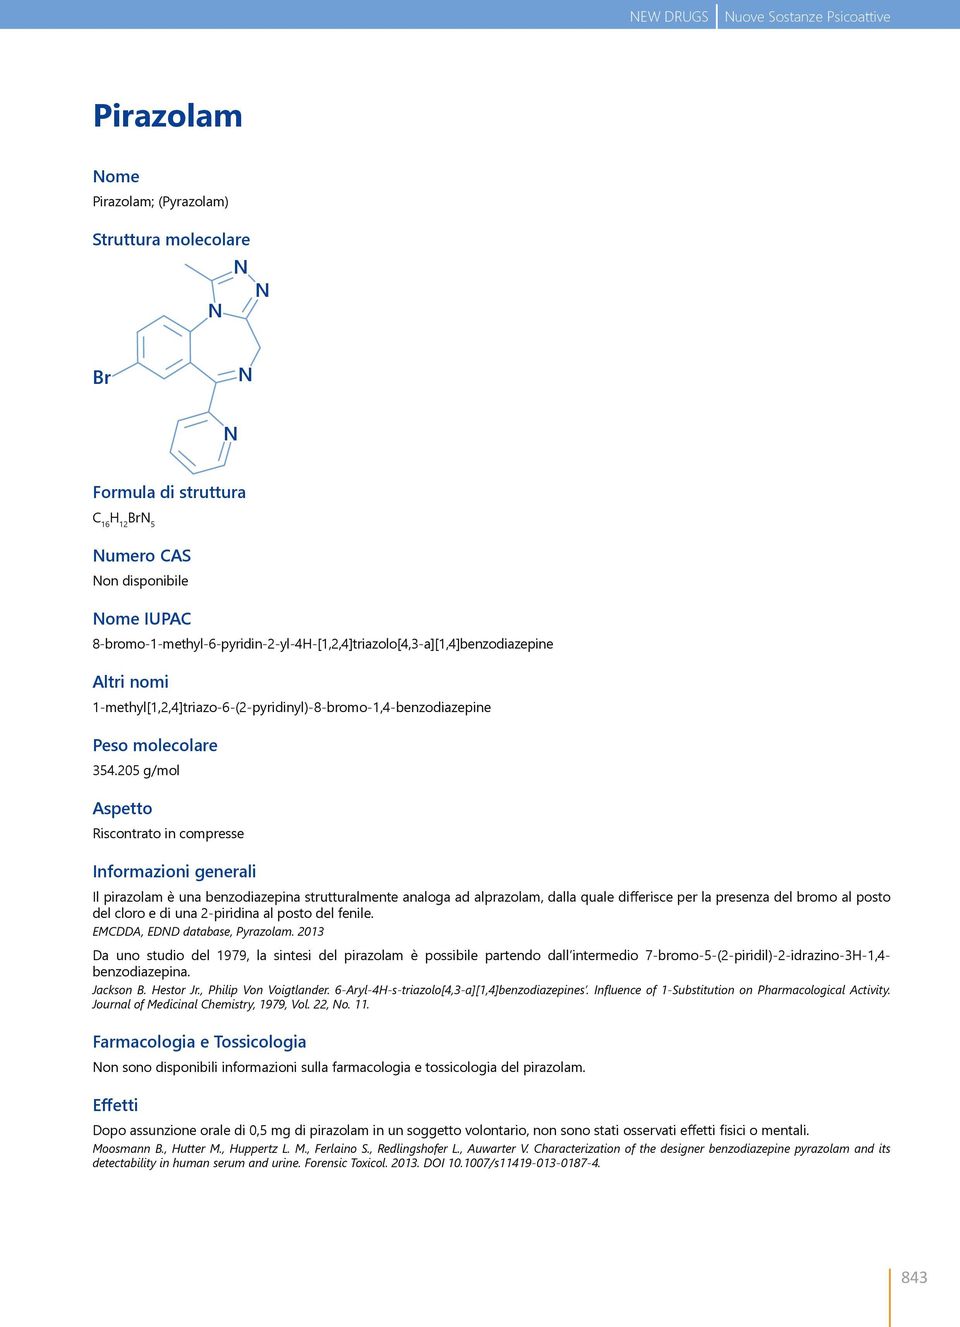 205 g/mol Aspetto Riscontrato in compresse Informazioni generali Il pirazolam è una benzodiazepina strutturalmente analoga ad alprazolam, dalla quale differisce per la presenza del bromo al posto del